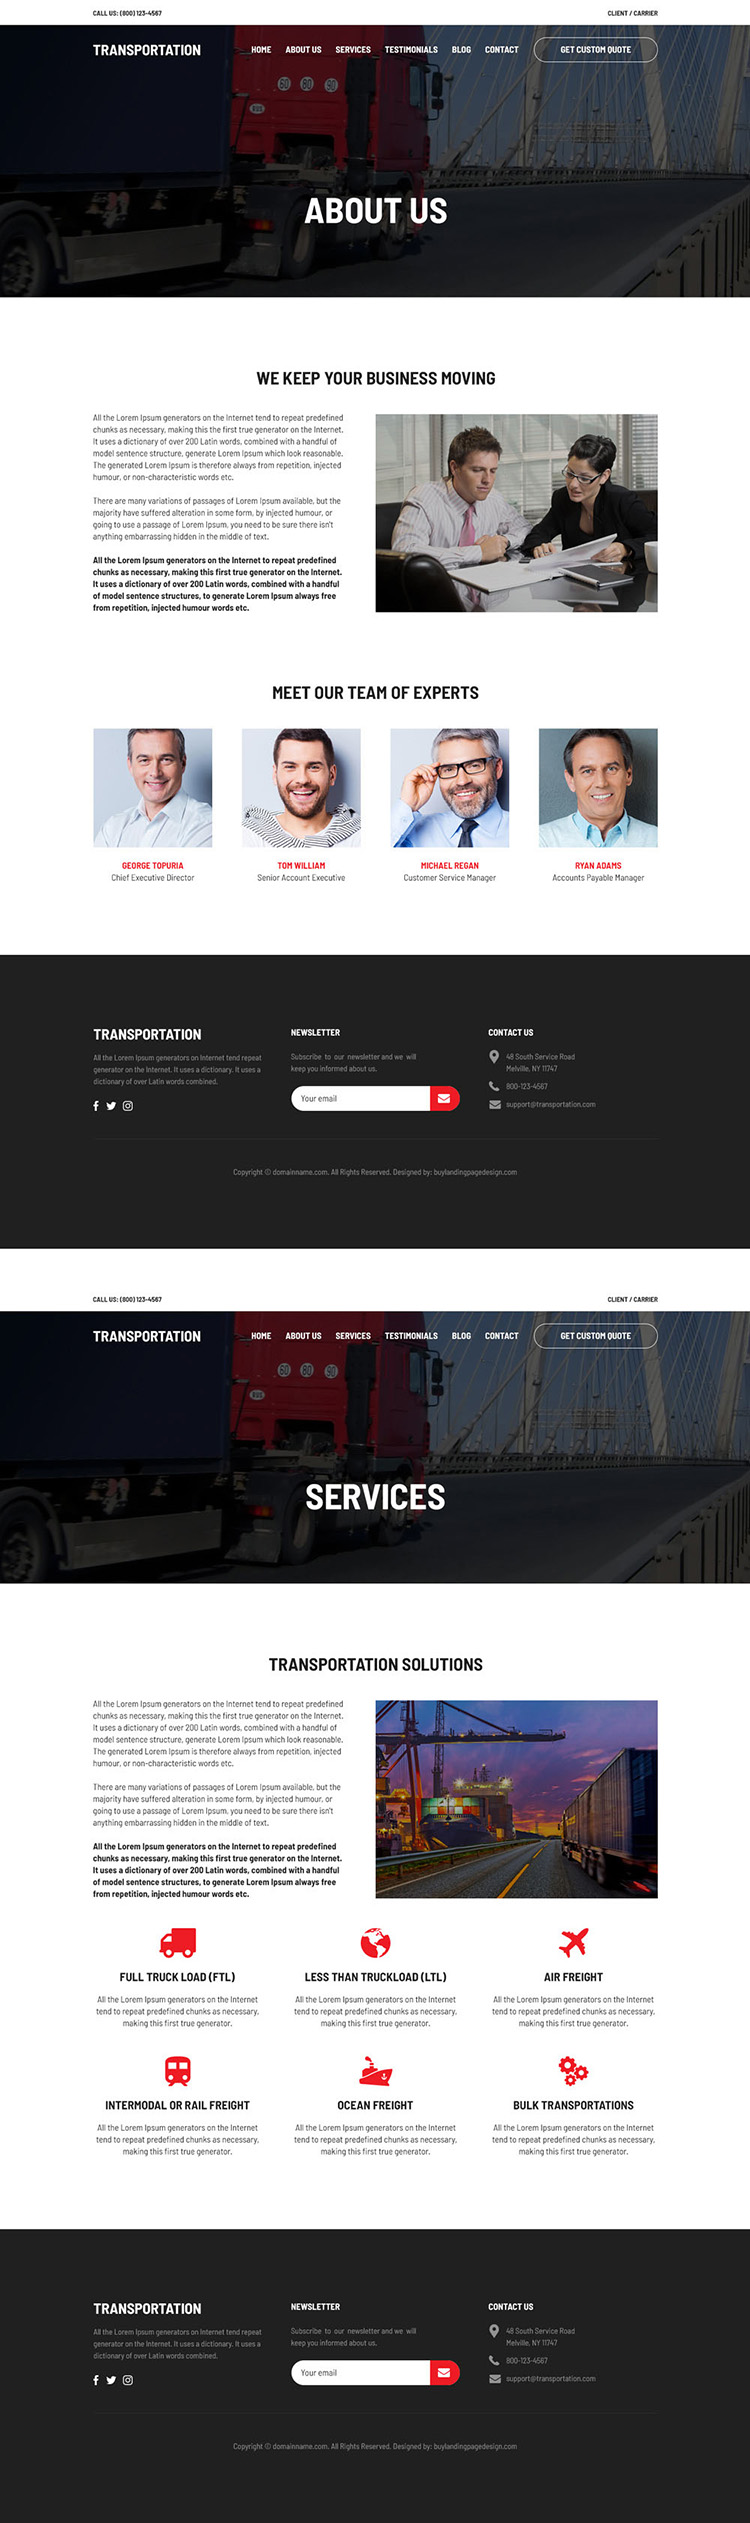 transportation and logistics management service website design